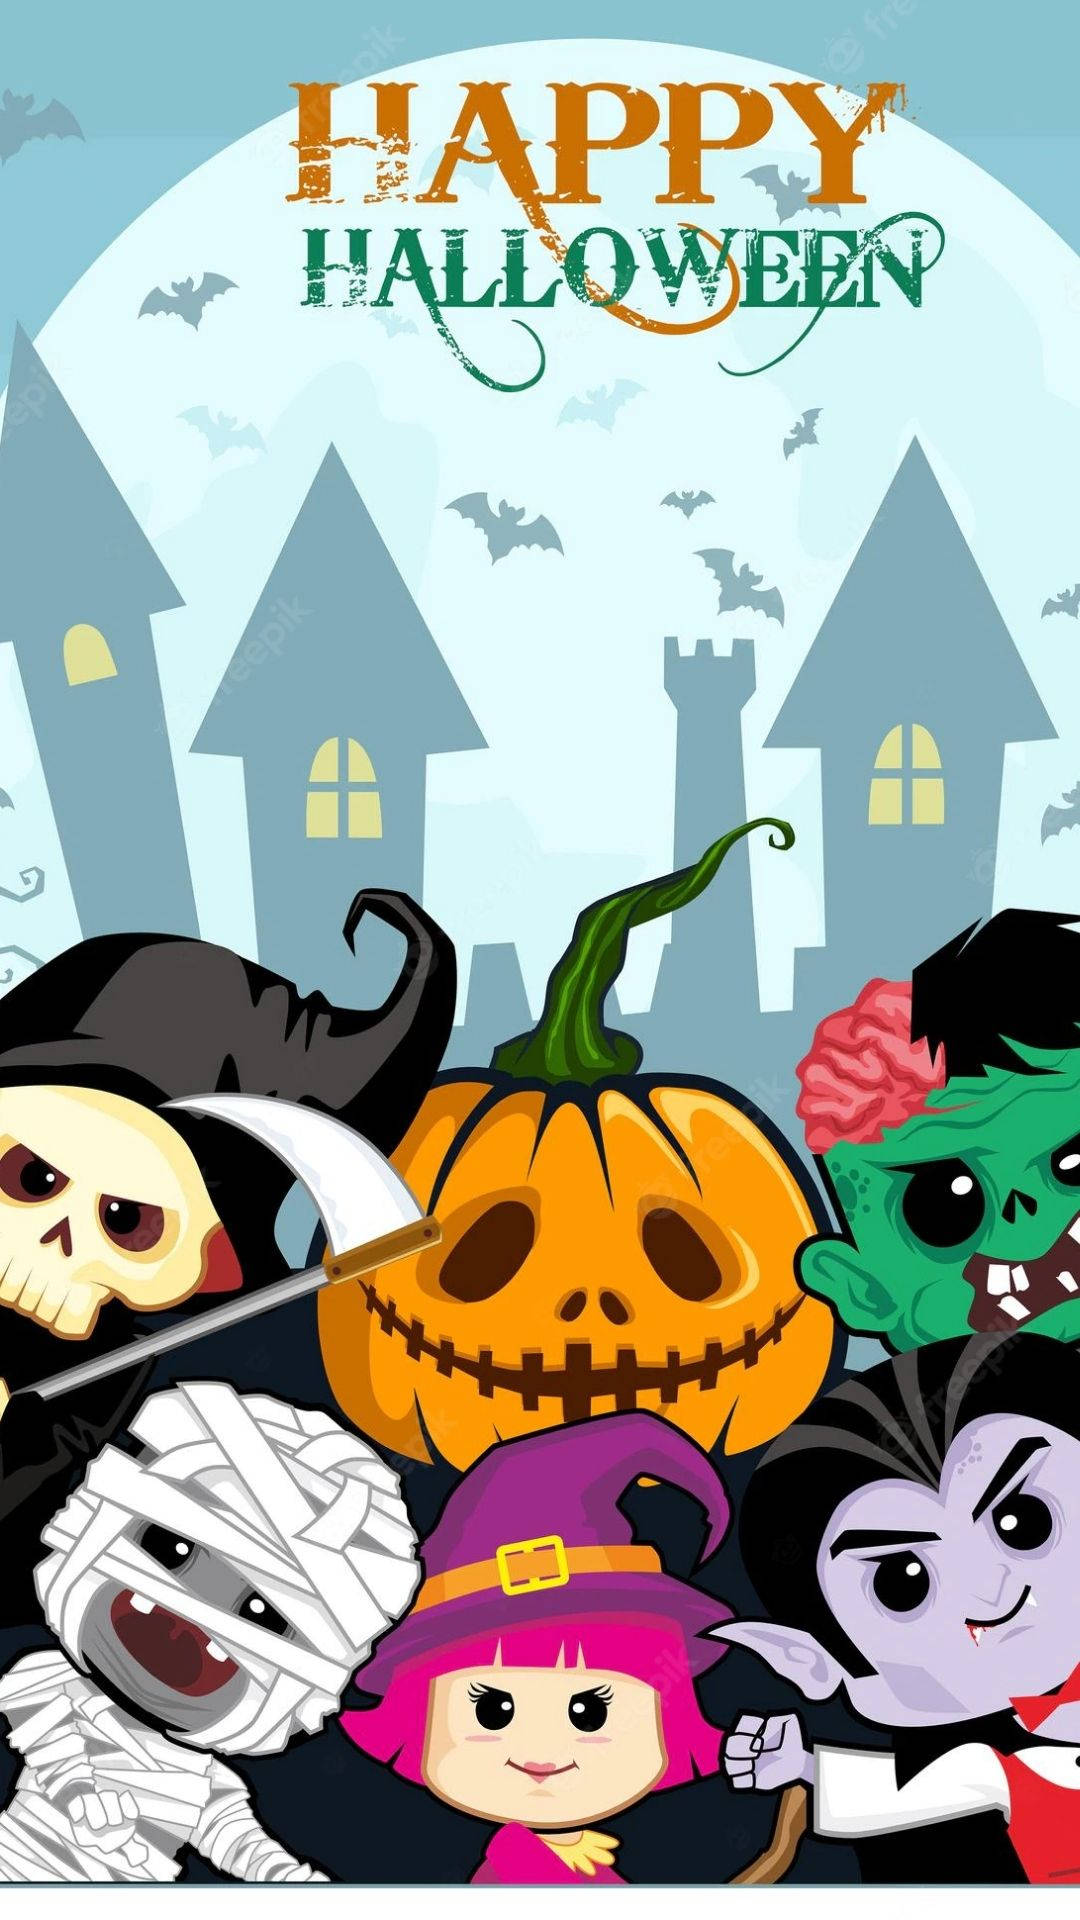 Peeking Cartoon Halloween Characters Wallpaper